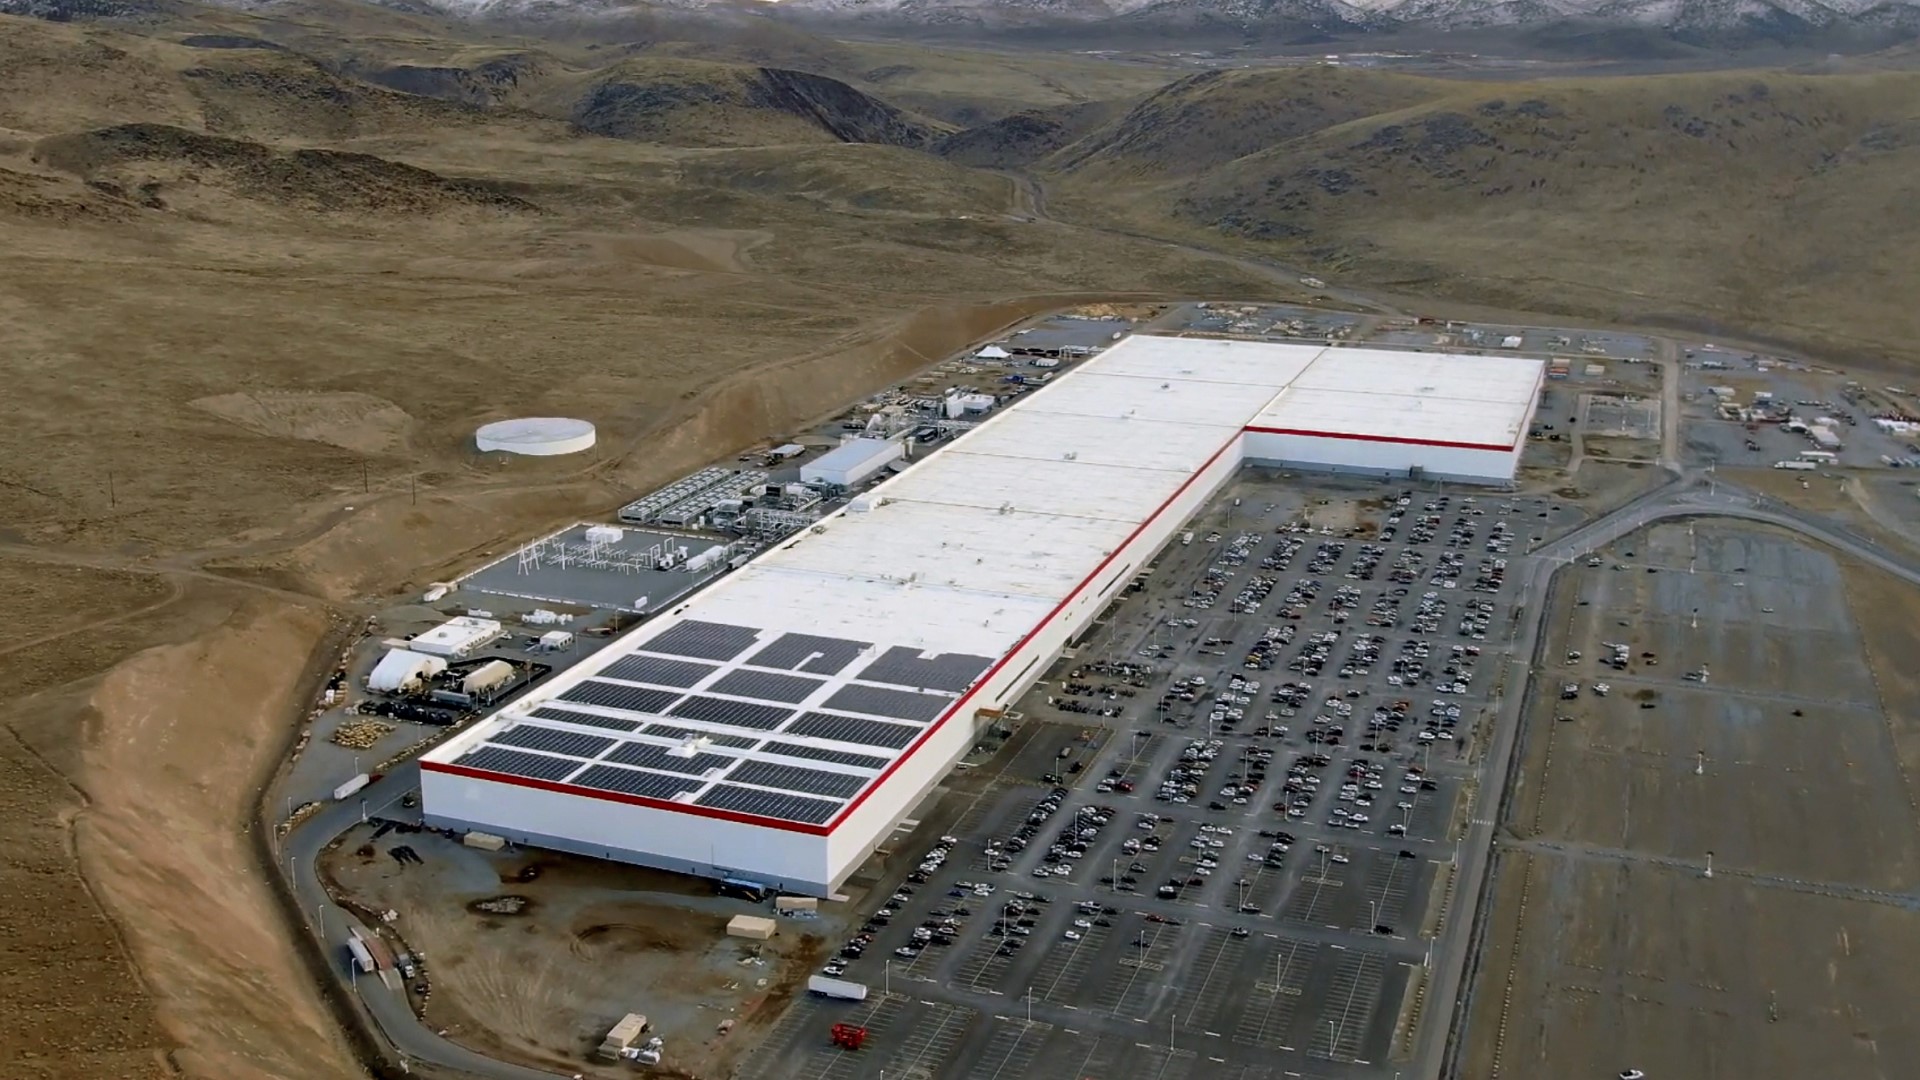 Tesla ผลิตรถอีวีทะลุ 3 ล้านคัน ซึ่งมาจากโรงงานเซี่ยงไฮ้ 1 ล้านคัน